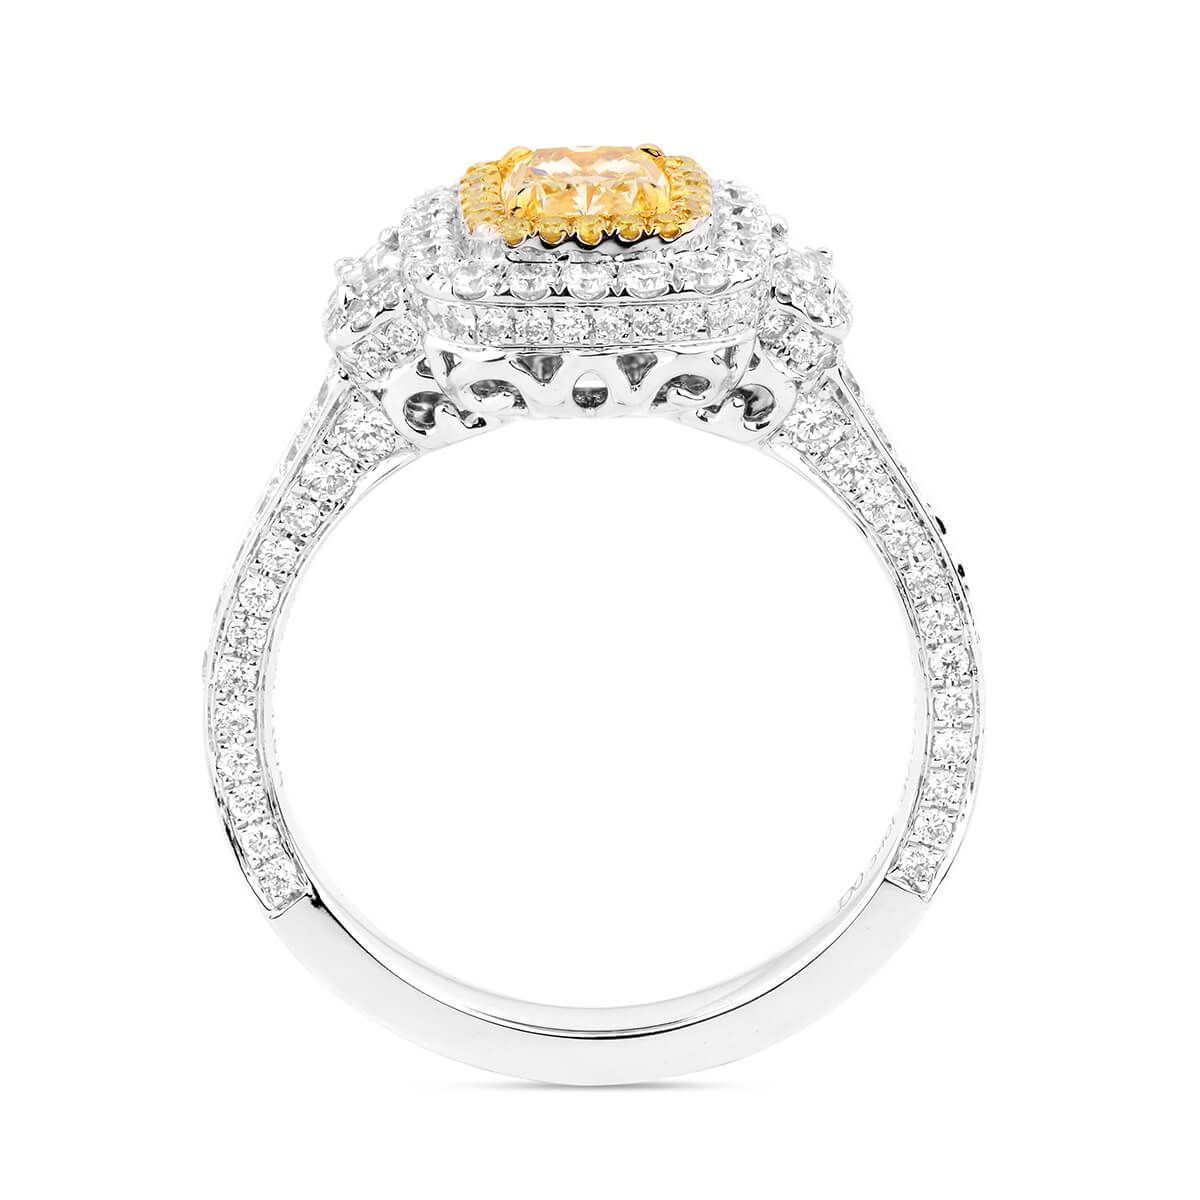 Fancy Intense Yellow Diamond Ring, 0.54 Ct. (1.59 Ct. TW), Cushion shape, GIA Certified, 2175855376